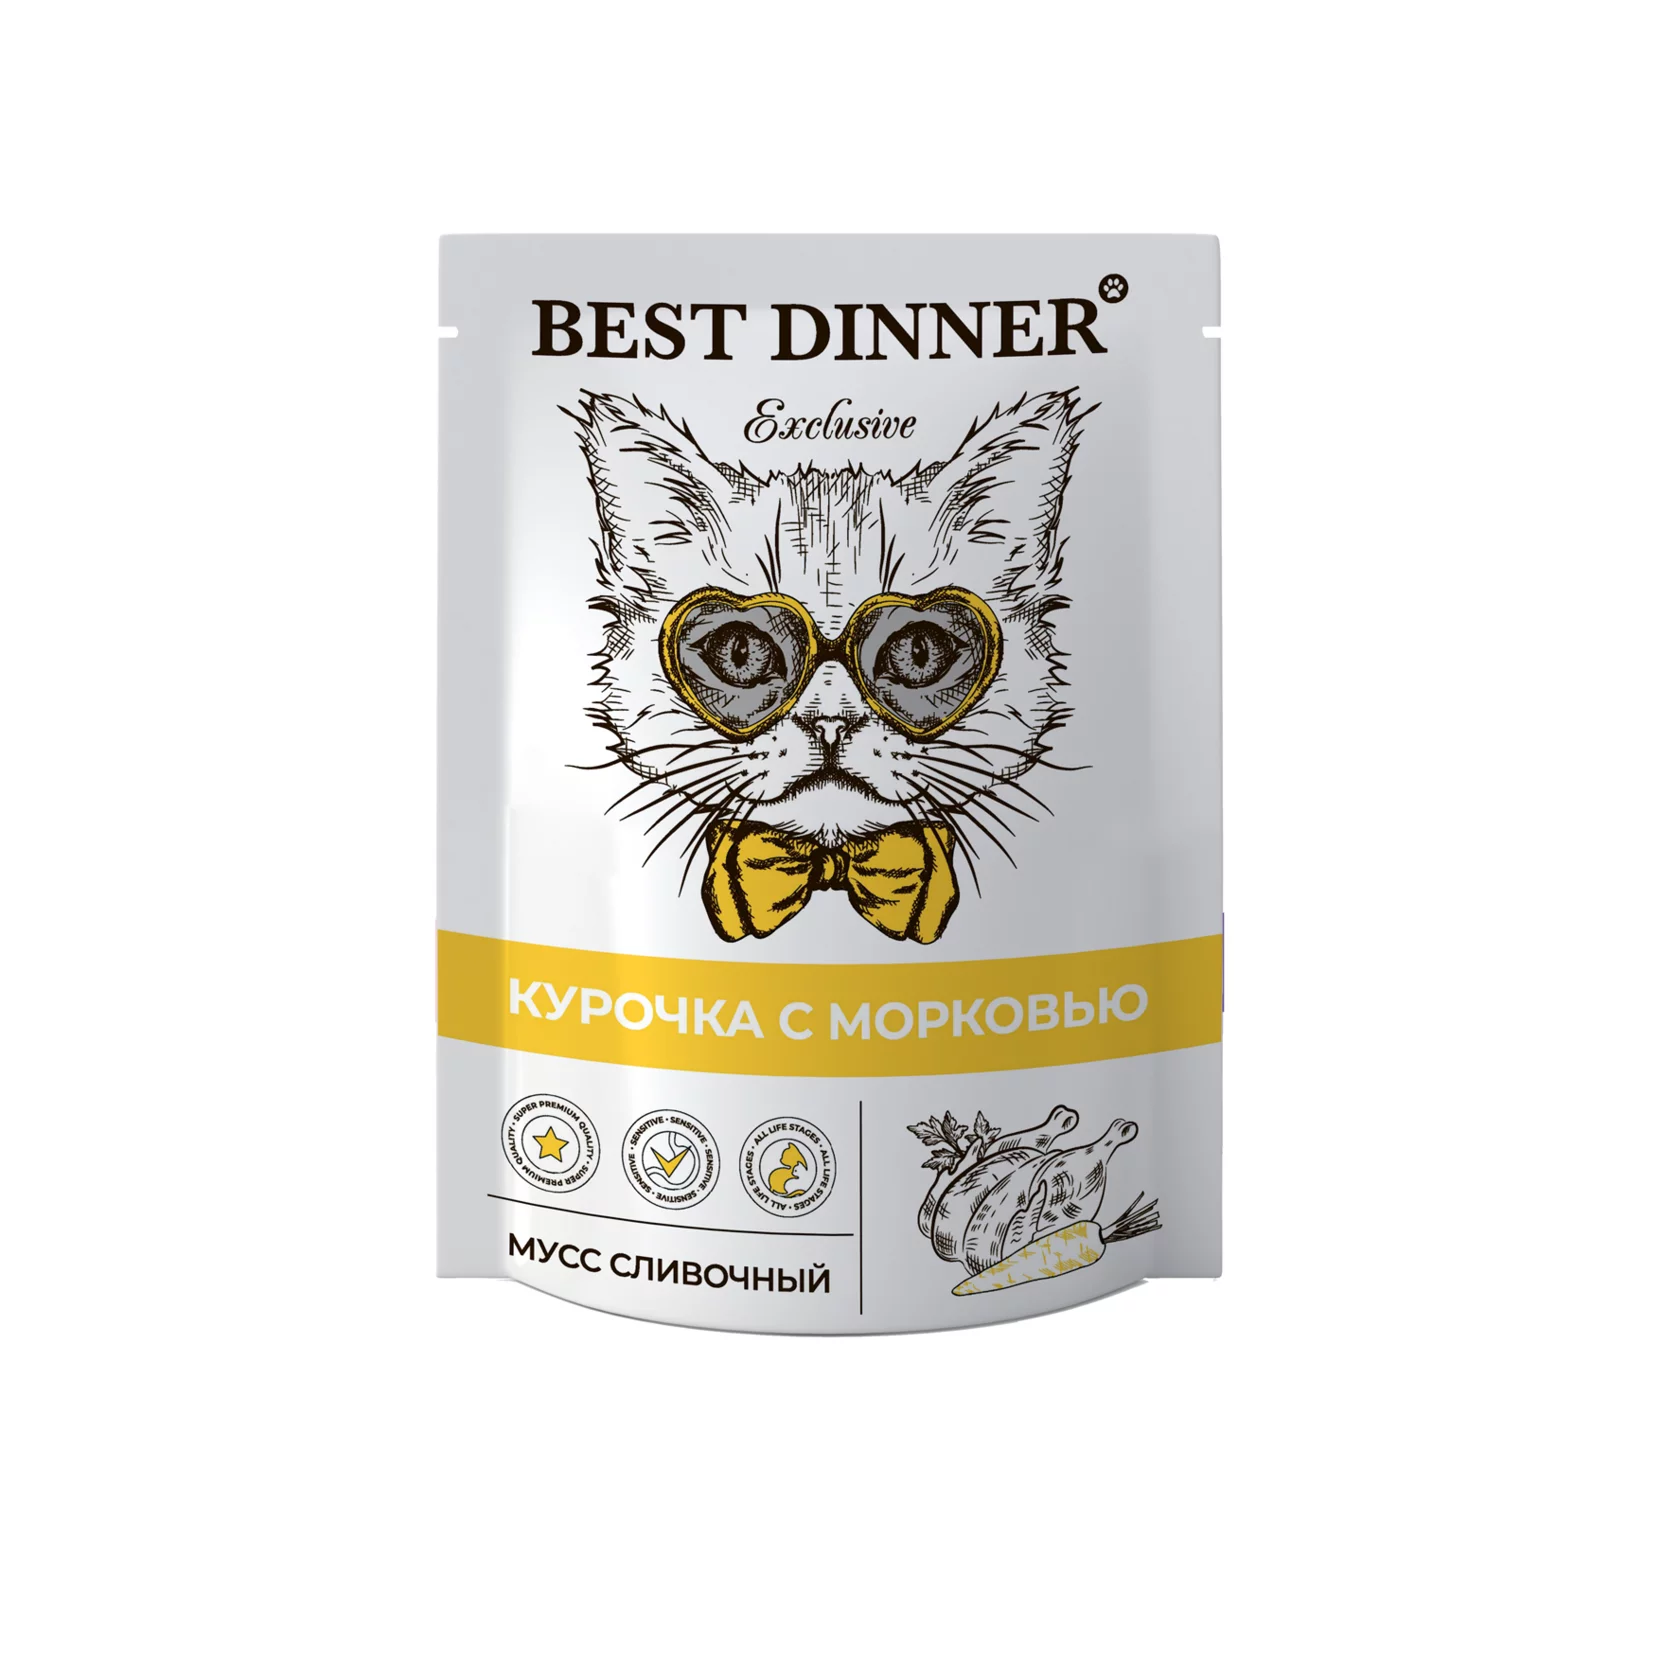 Пауч мусс сливочный для котят и взрослых кошек Best Dinner (Бест Диннер) Adult & Kitten, курочка с морковью, 85 г